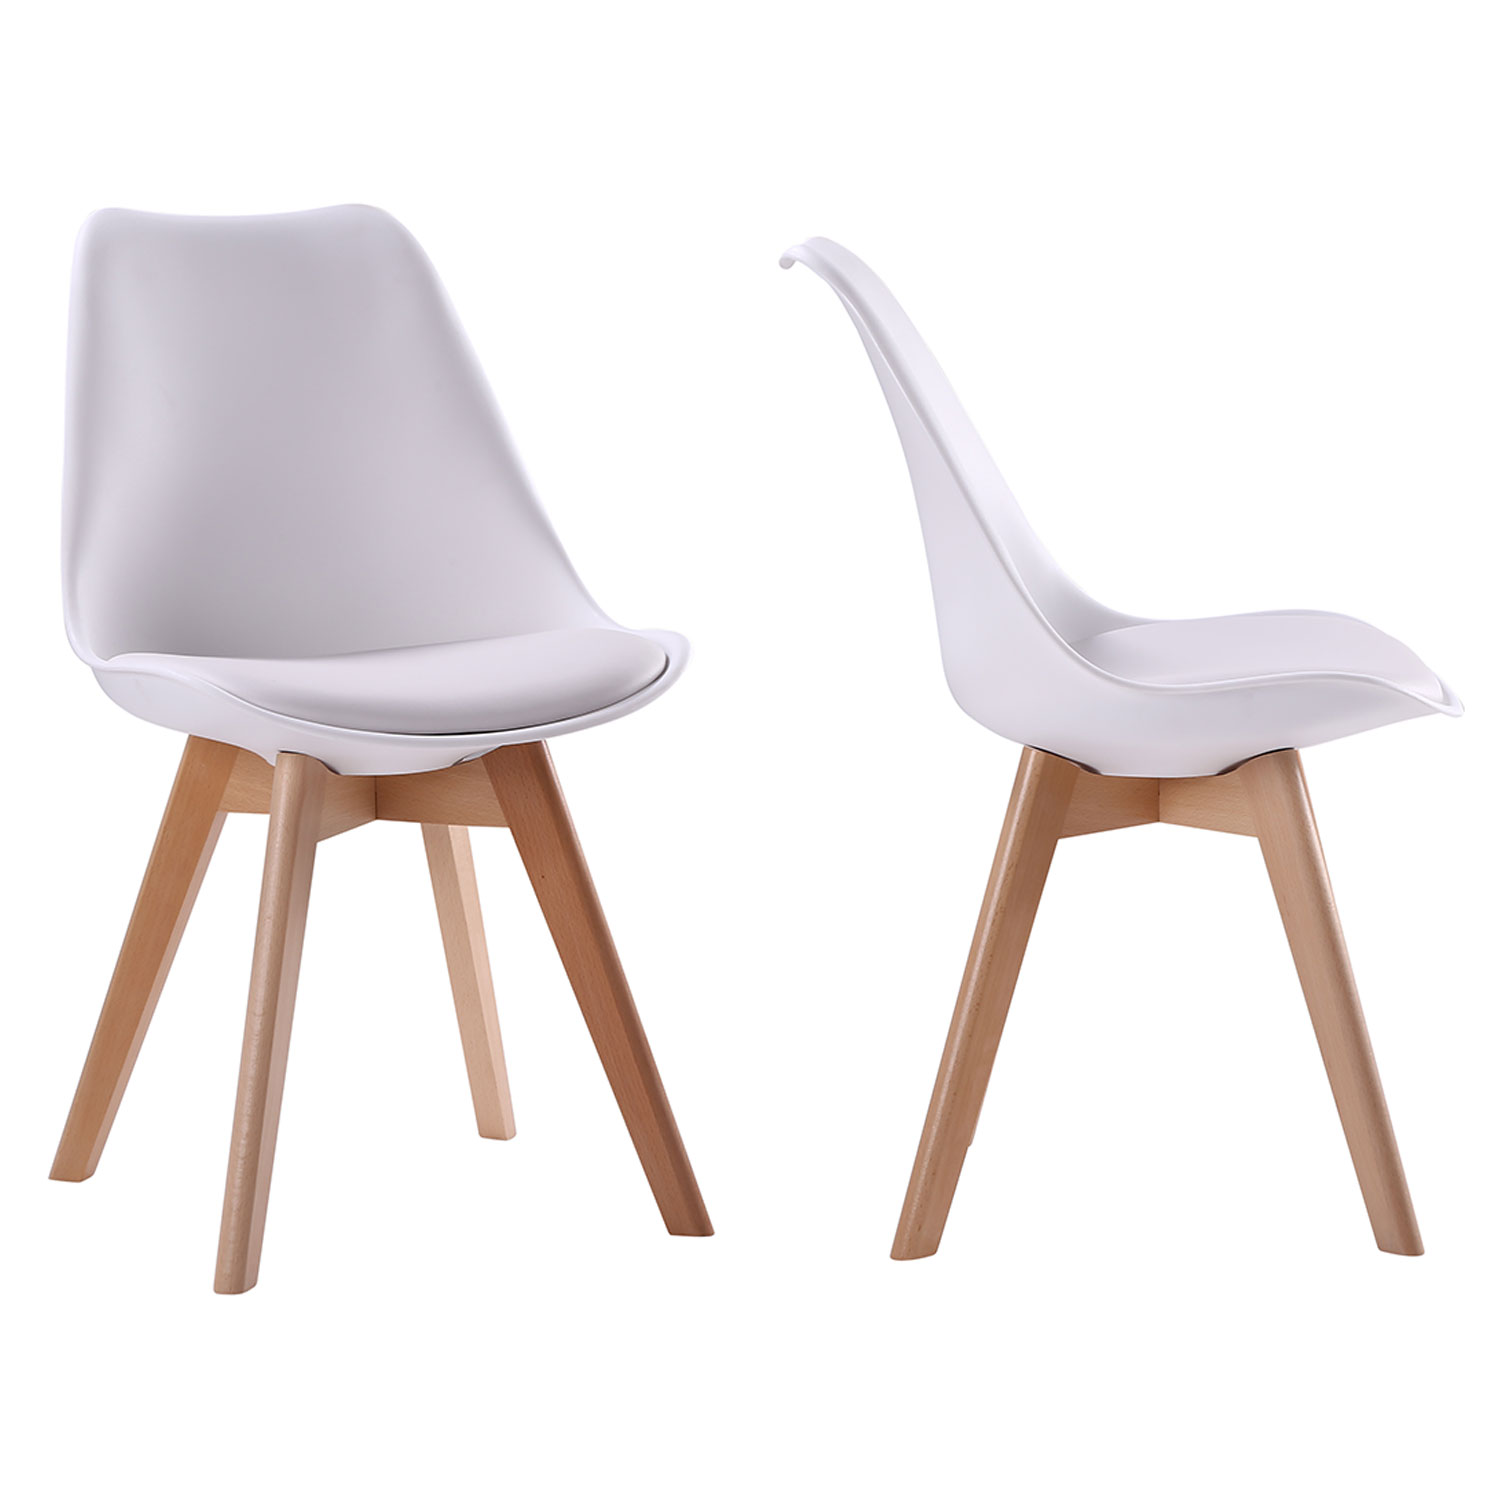 Lote de 2 sillas escandinavas NORA color blanco con cojín